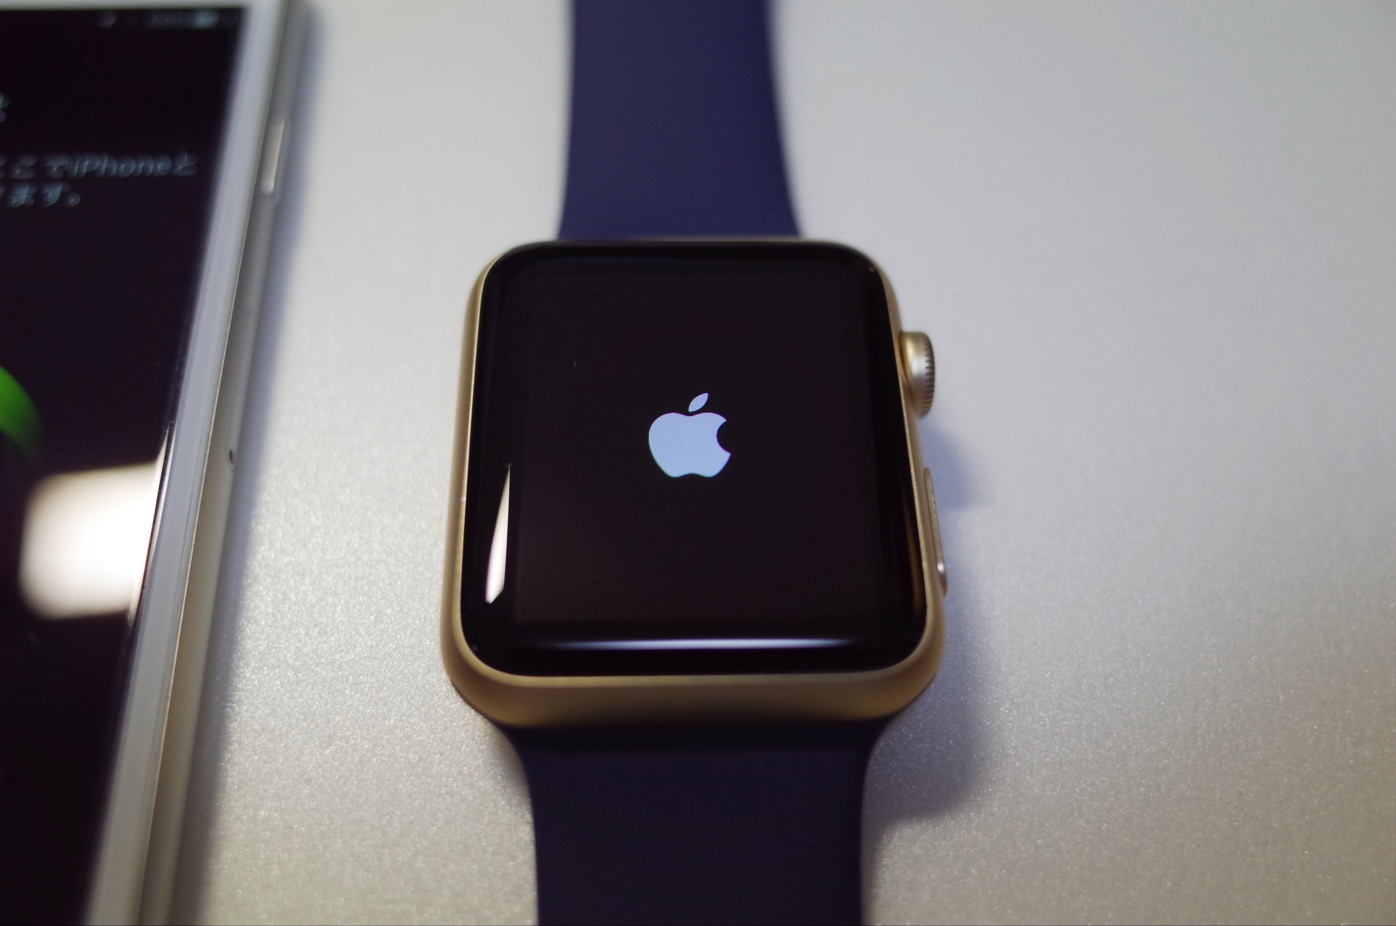 [Apple][AppleWatch]iPhoneのApple Storeで念願のApple Watch(ゴールド)を注文したよ